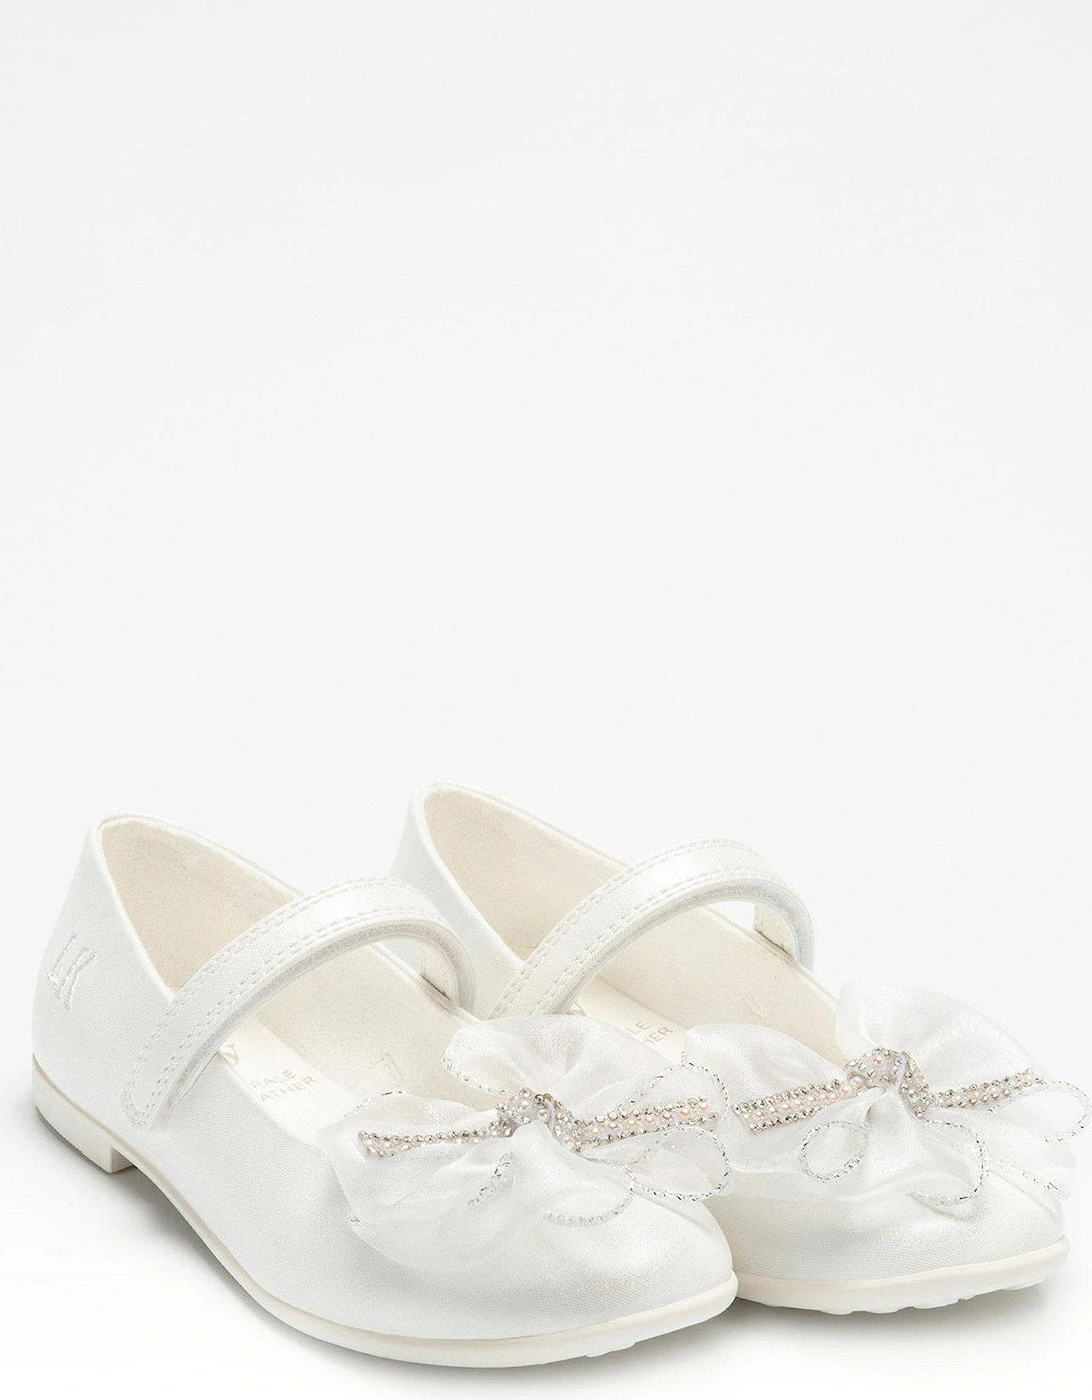 Ludovica Occasion Ballerina Shoe